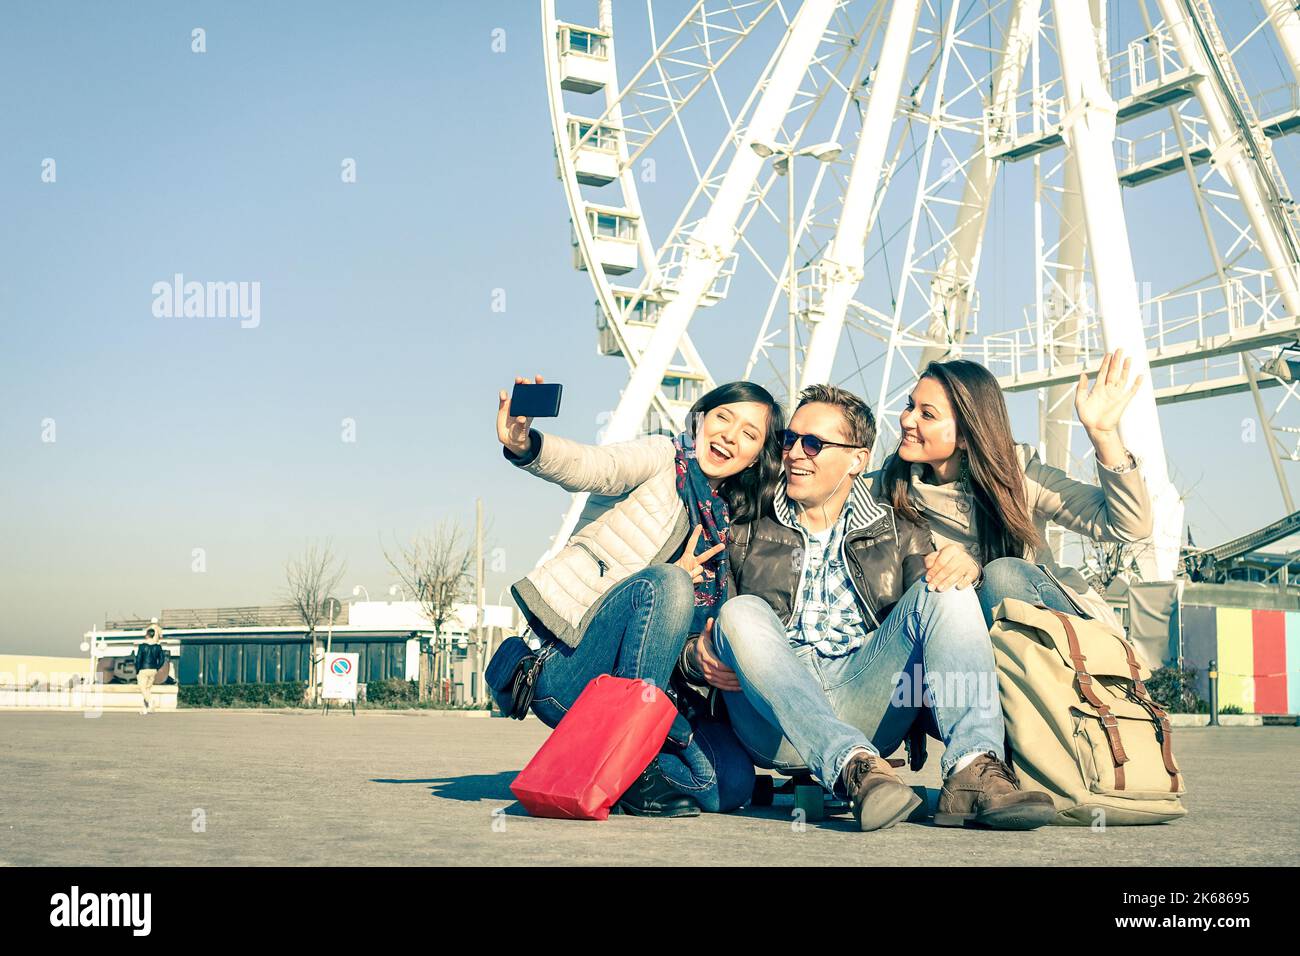 Junge Hipster-Leute machen ein Selfie im luna Park mit Riesenrad - Konzept der Freundschaft und Spaß mit neuen Trends und Technologie - Beste Freunde catc Stockfoto